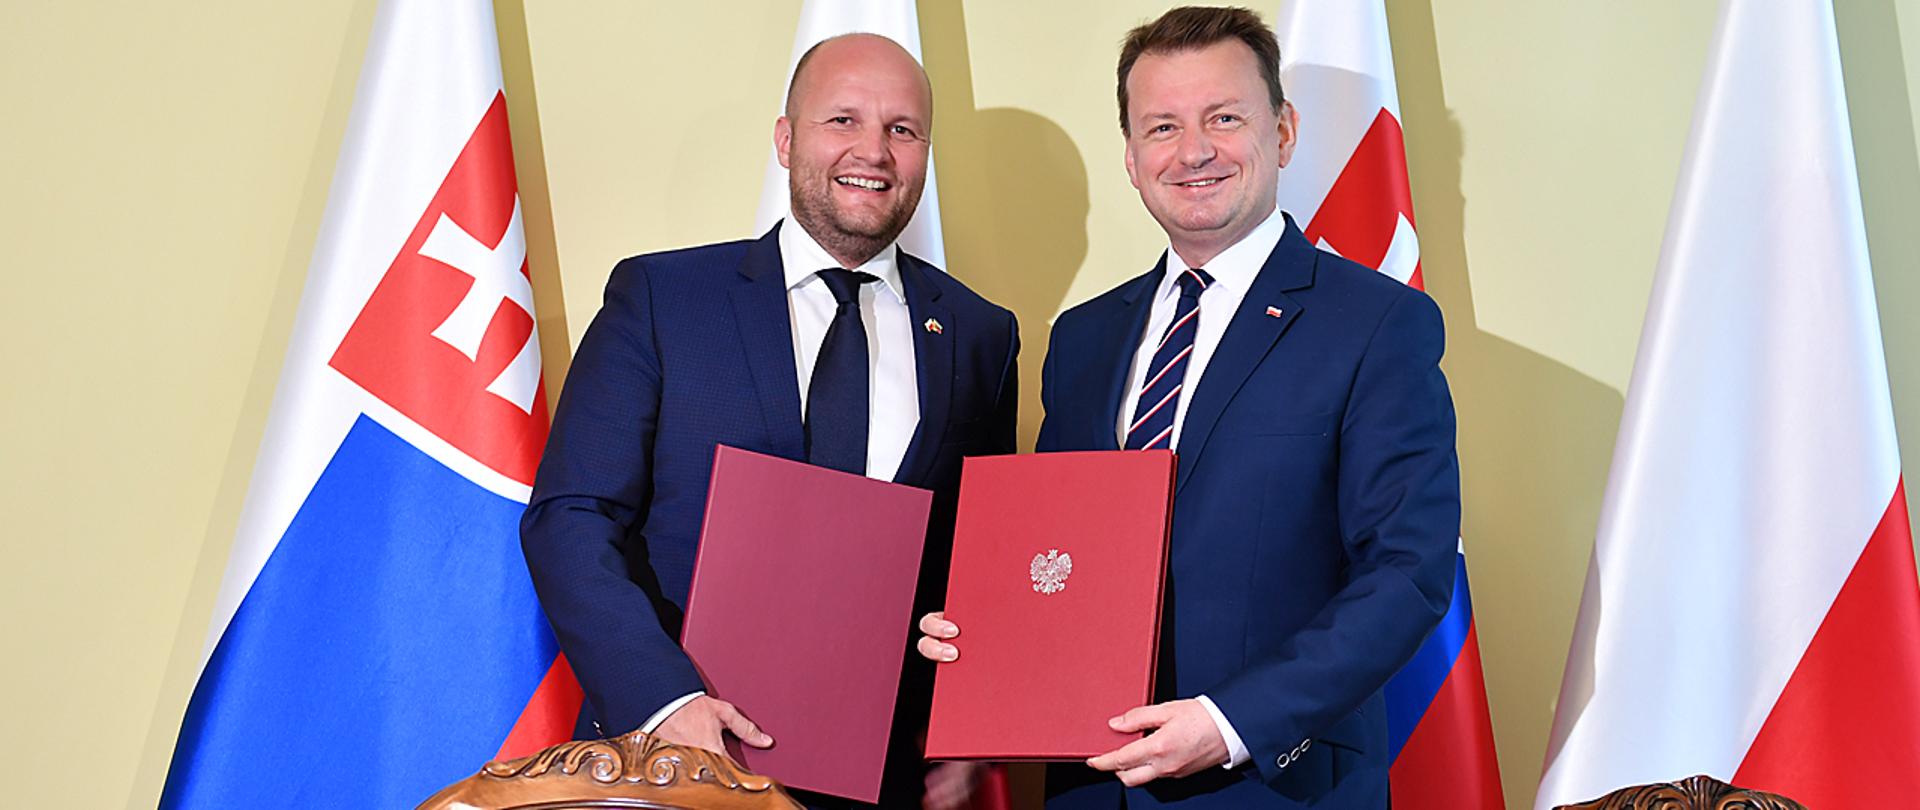 W środę, 8 lipca w Warszawie, Mariusz Błaszczak, minister obrony narodowej gościł Jaroslava Naď,, szefa resortu obrony Słowacji. 